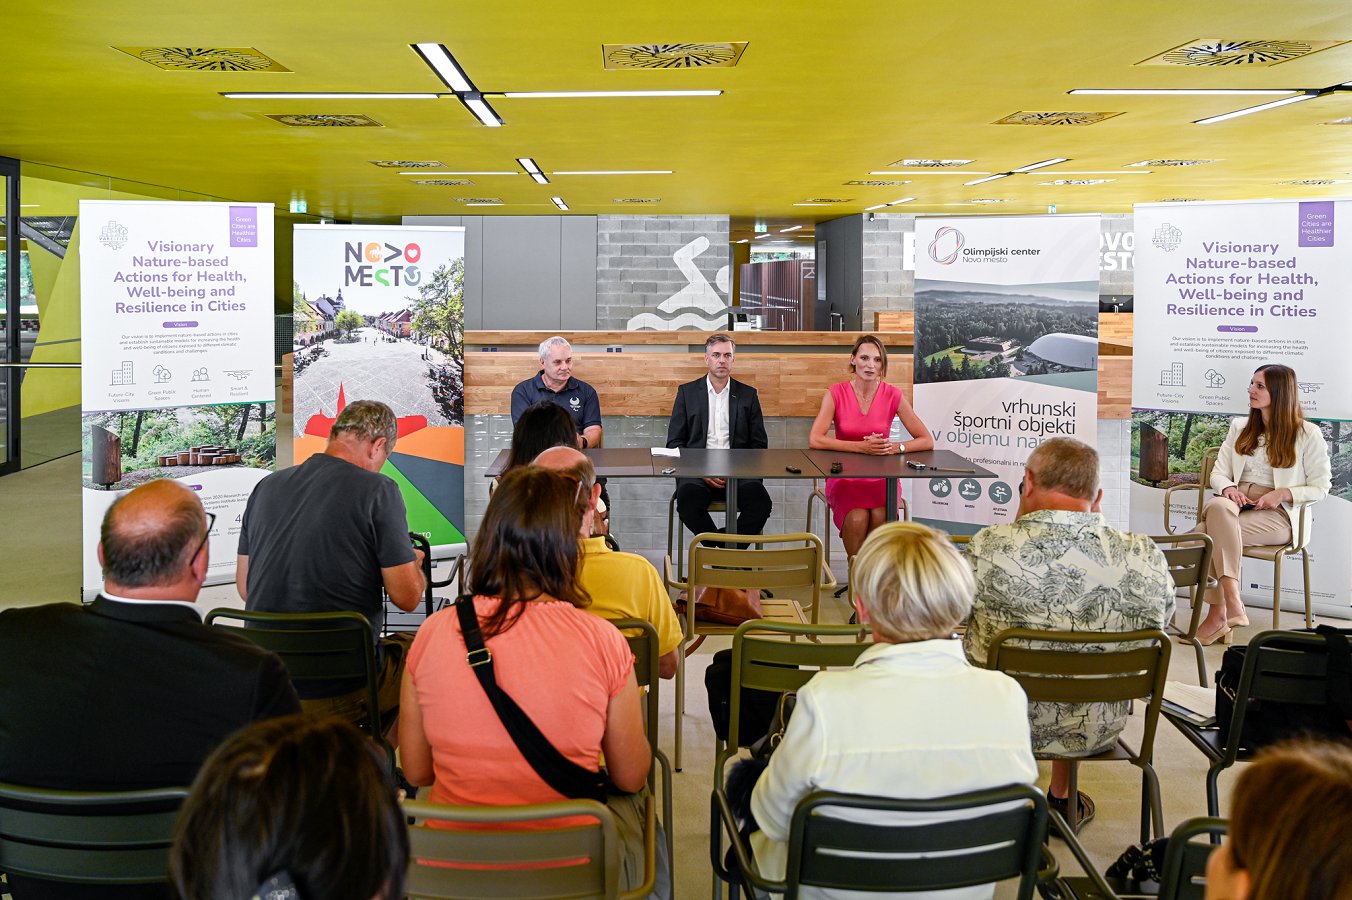 Novinarska konferenca od odprtju Bazena Novo mesto